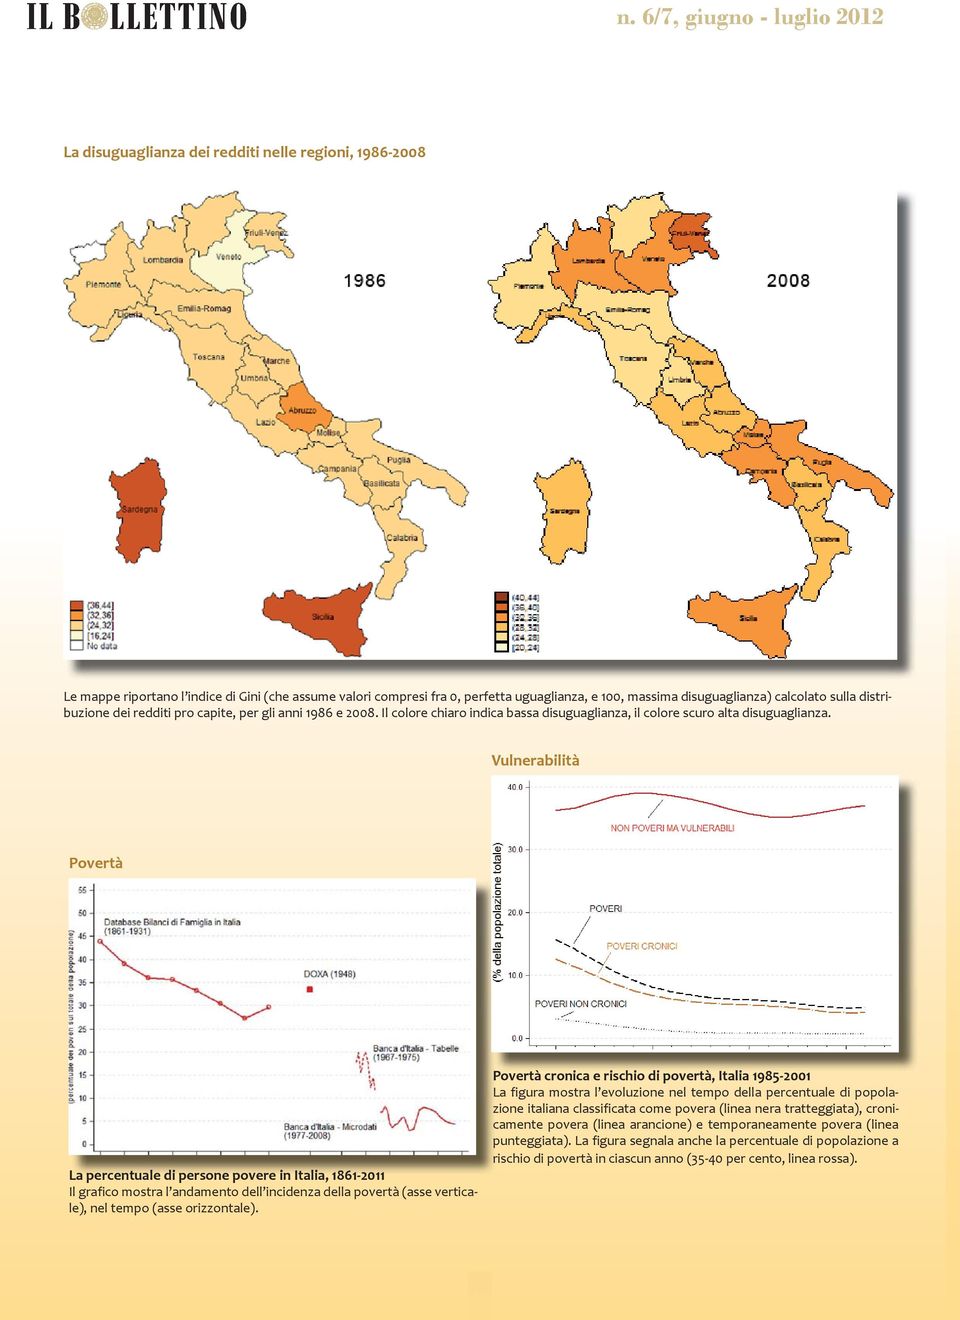 Vulnerabilità Povertà La percentuale di persone povere in Italia, 1861-2011 Il grafico mostra l andamento dell incidenza della povertà (asse verticale), nel tempo (asse orizzontale).